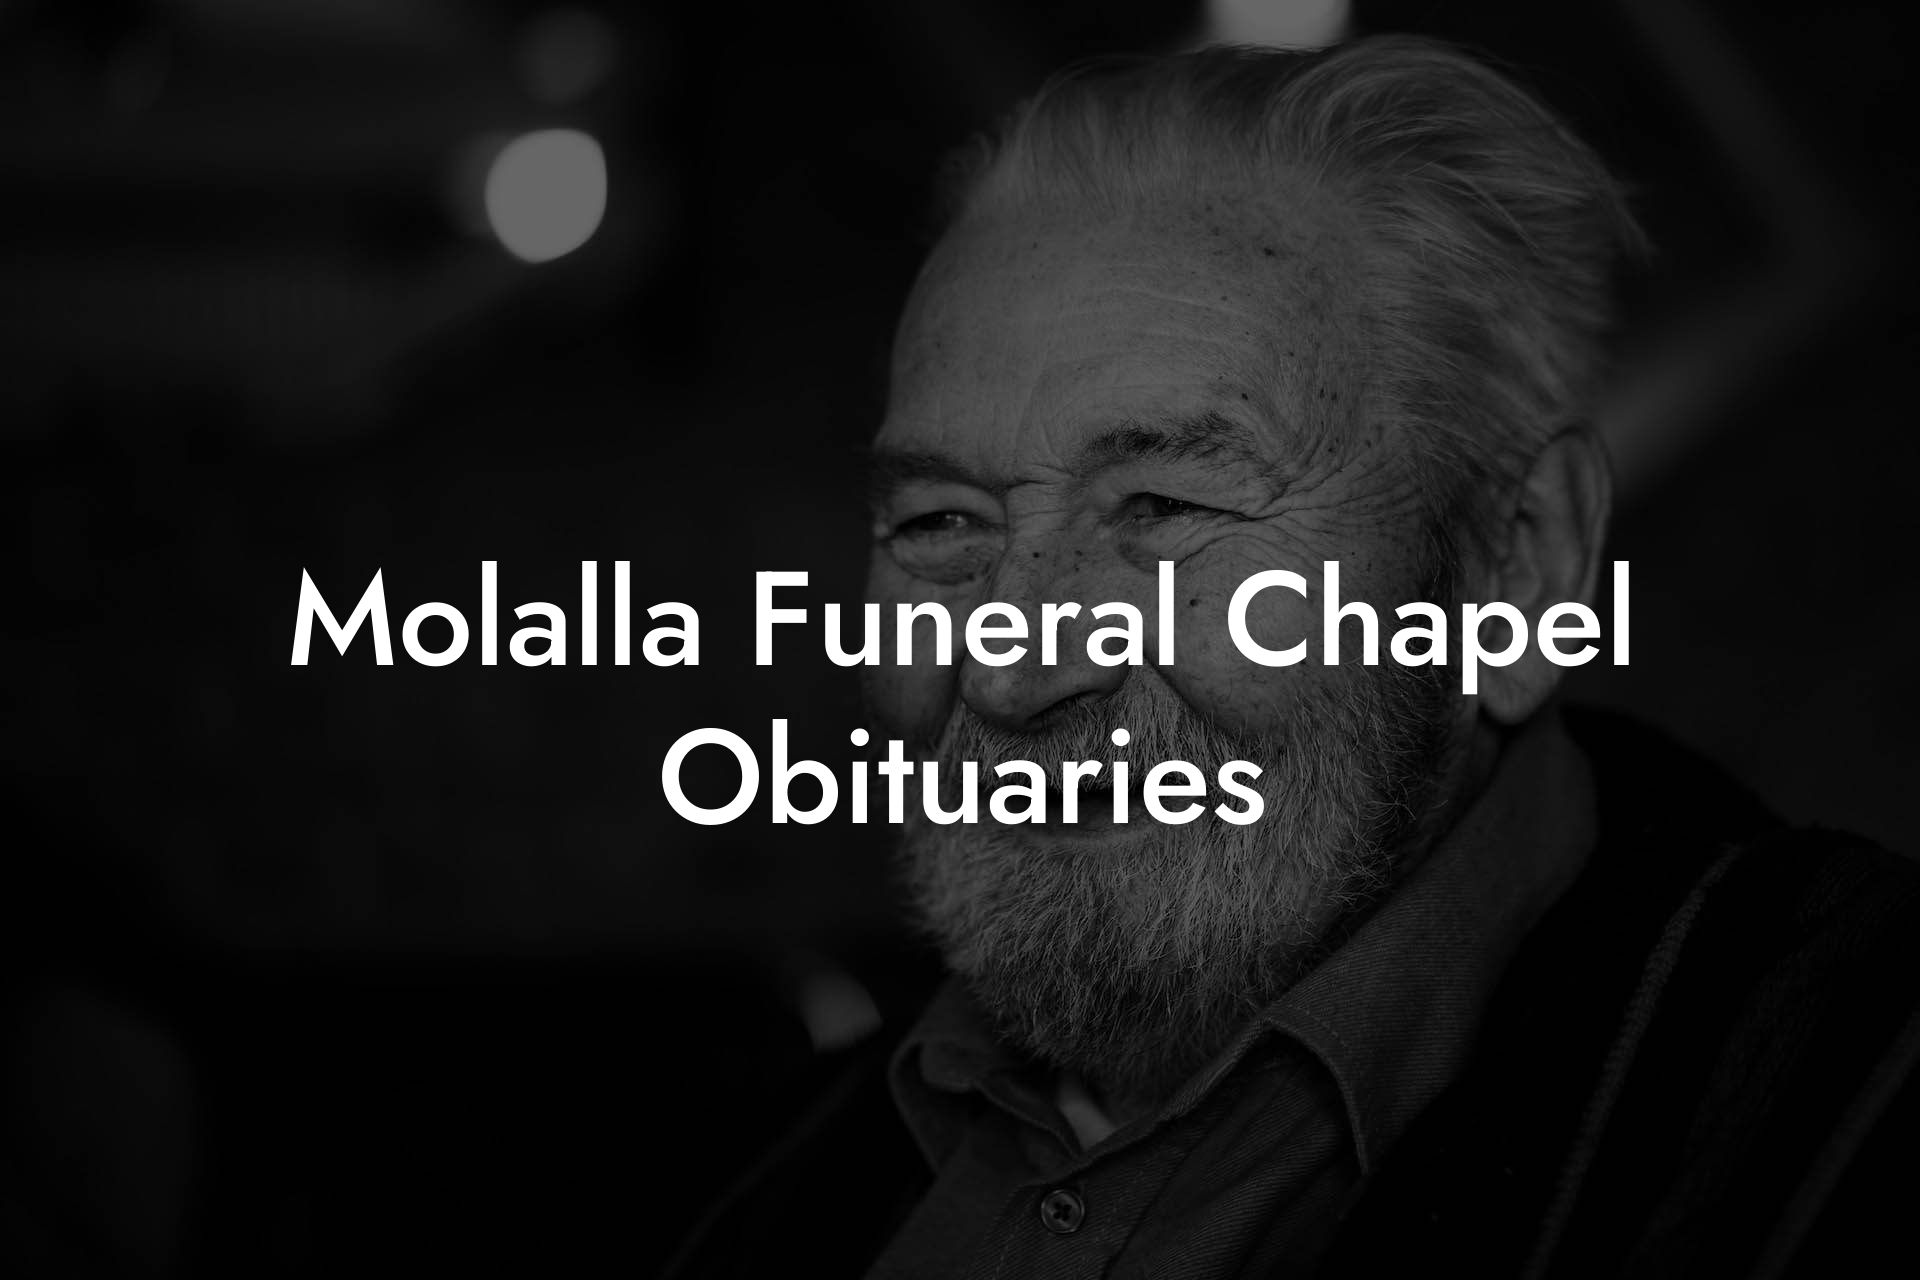 Molalla Funeral Chapel Obituaries